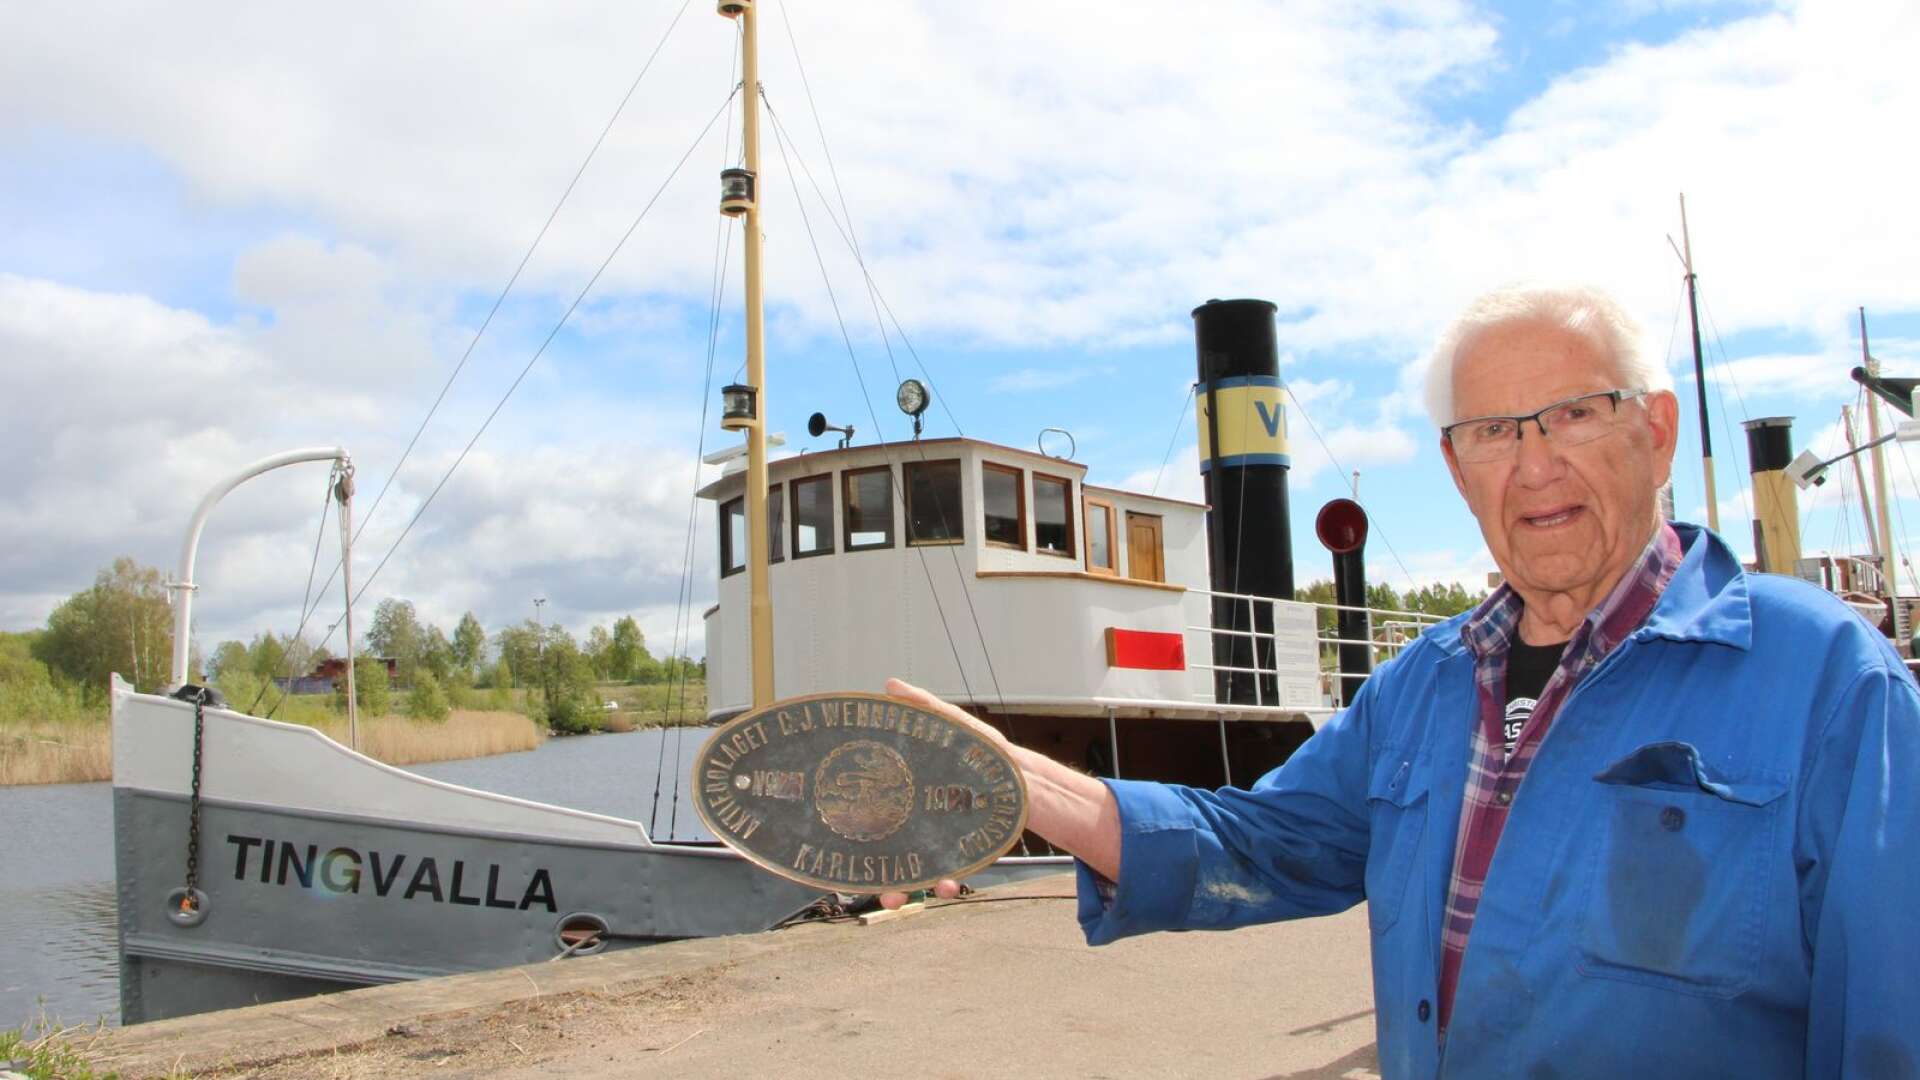 Ångbåtssällskapet Polstjärnan äger bogserbåten Tingvalla som nu fyller 100 år. Här står maskinchefen Siwert Andersson med emblemet som visar att båten byggdes på Wennbergs mekaniska verkstad.